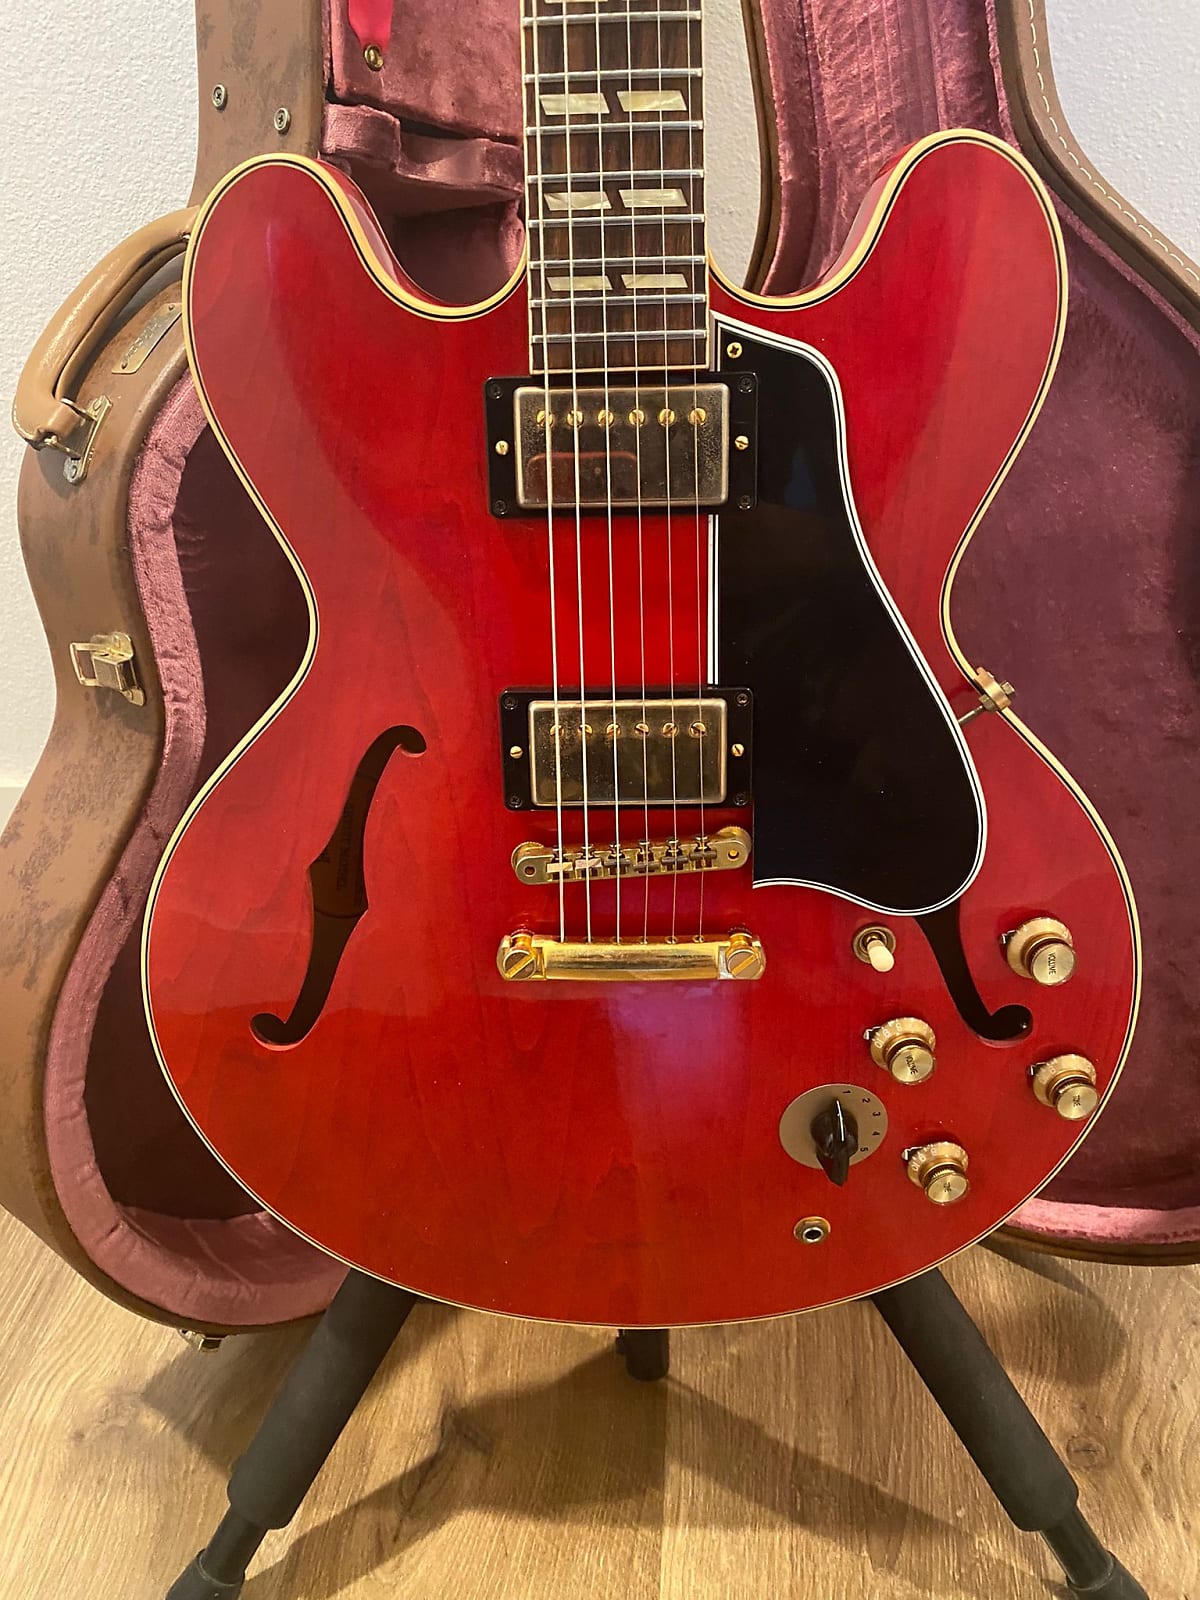 Gibson Freddie King 1960 ES-345